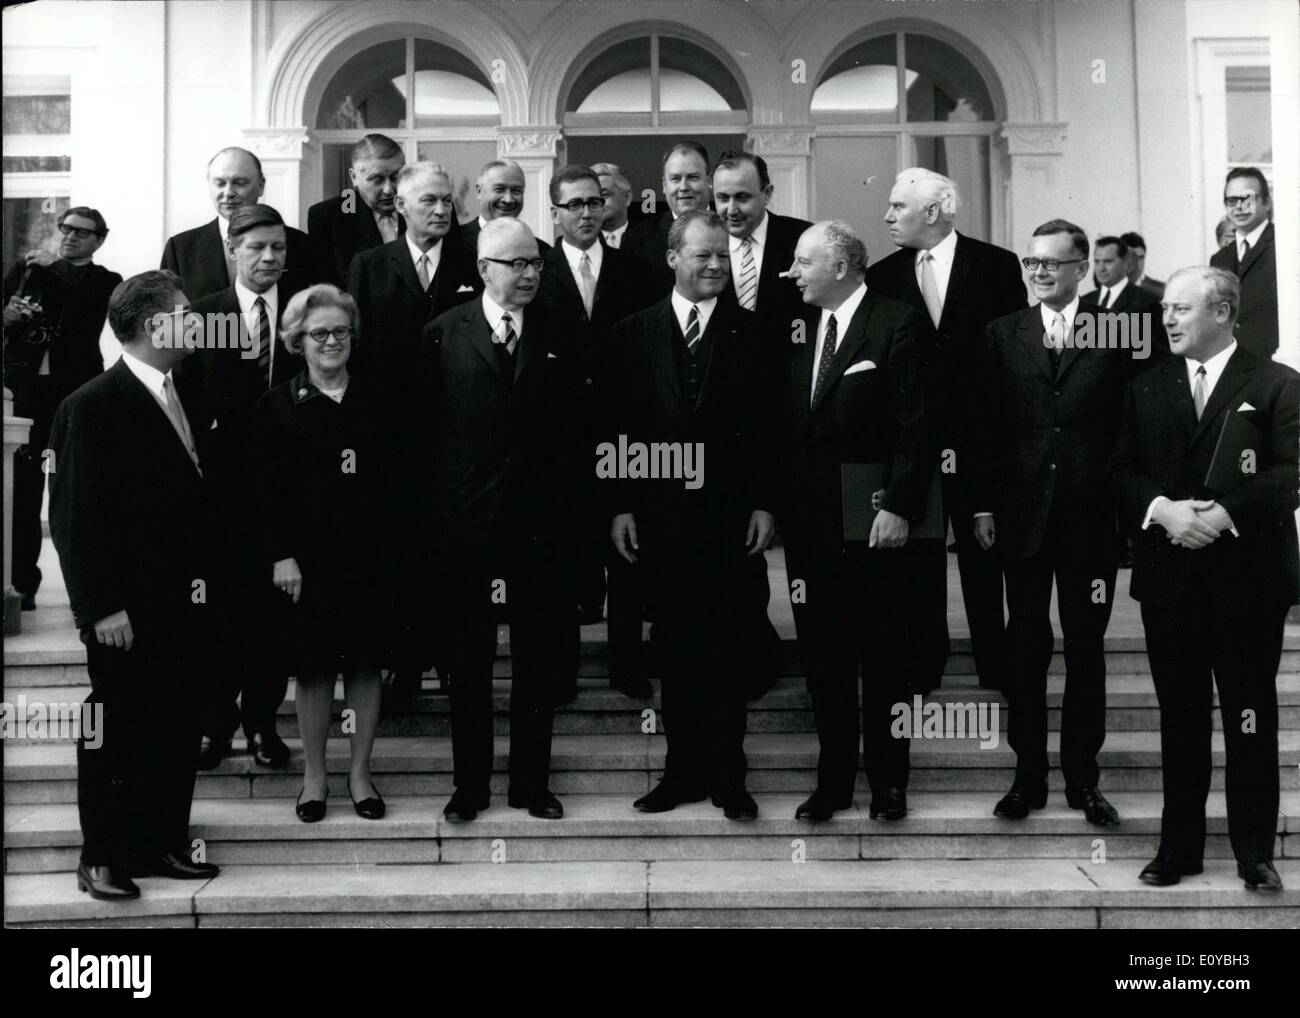 10 octobre 1969 - Le dernier acte du changement de pouvoir à Berlin a été effectuée. Les nouveaux ministres ont été accueillis par le président de la République fédérale d'après leur assermentation. Notre photo montre les ministres avec le Président allemand, M. Heinemann en face de la Villa Hammerschmidt. Première rangée (de gauche à droite) : Gerhard Jahan, Kate STROBEL, Gustav Heinemann, Willy Brandt, Walter Scheel, Karl Schiller, Georg Leber. Deuxième rangée (de gauche à droite) : Helmut Schmidt, Alex Moller, Erhard Eppler, Hans Dietrich Genscher, Walter Arendt Banque D'Images